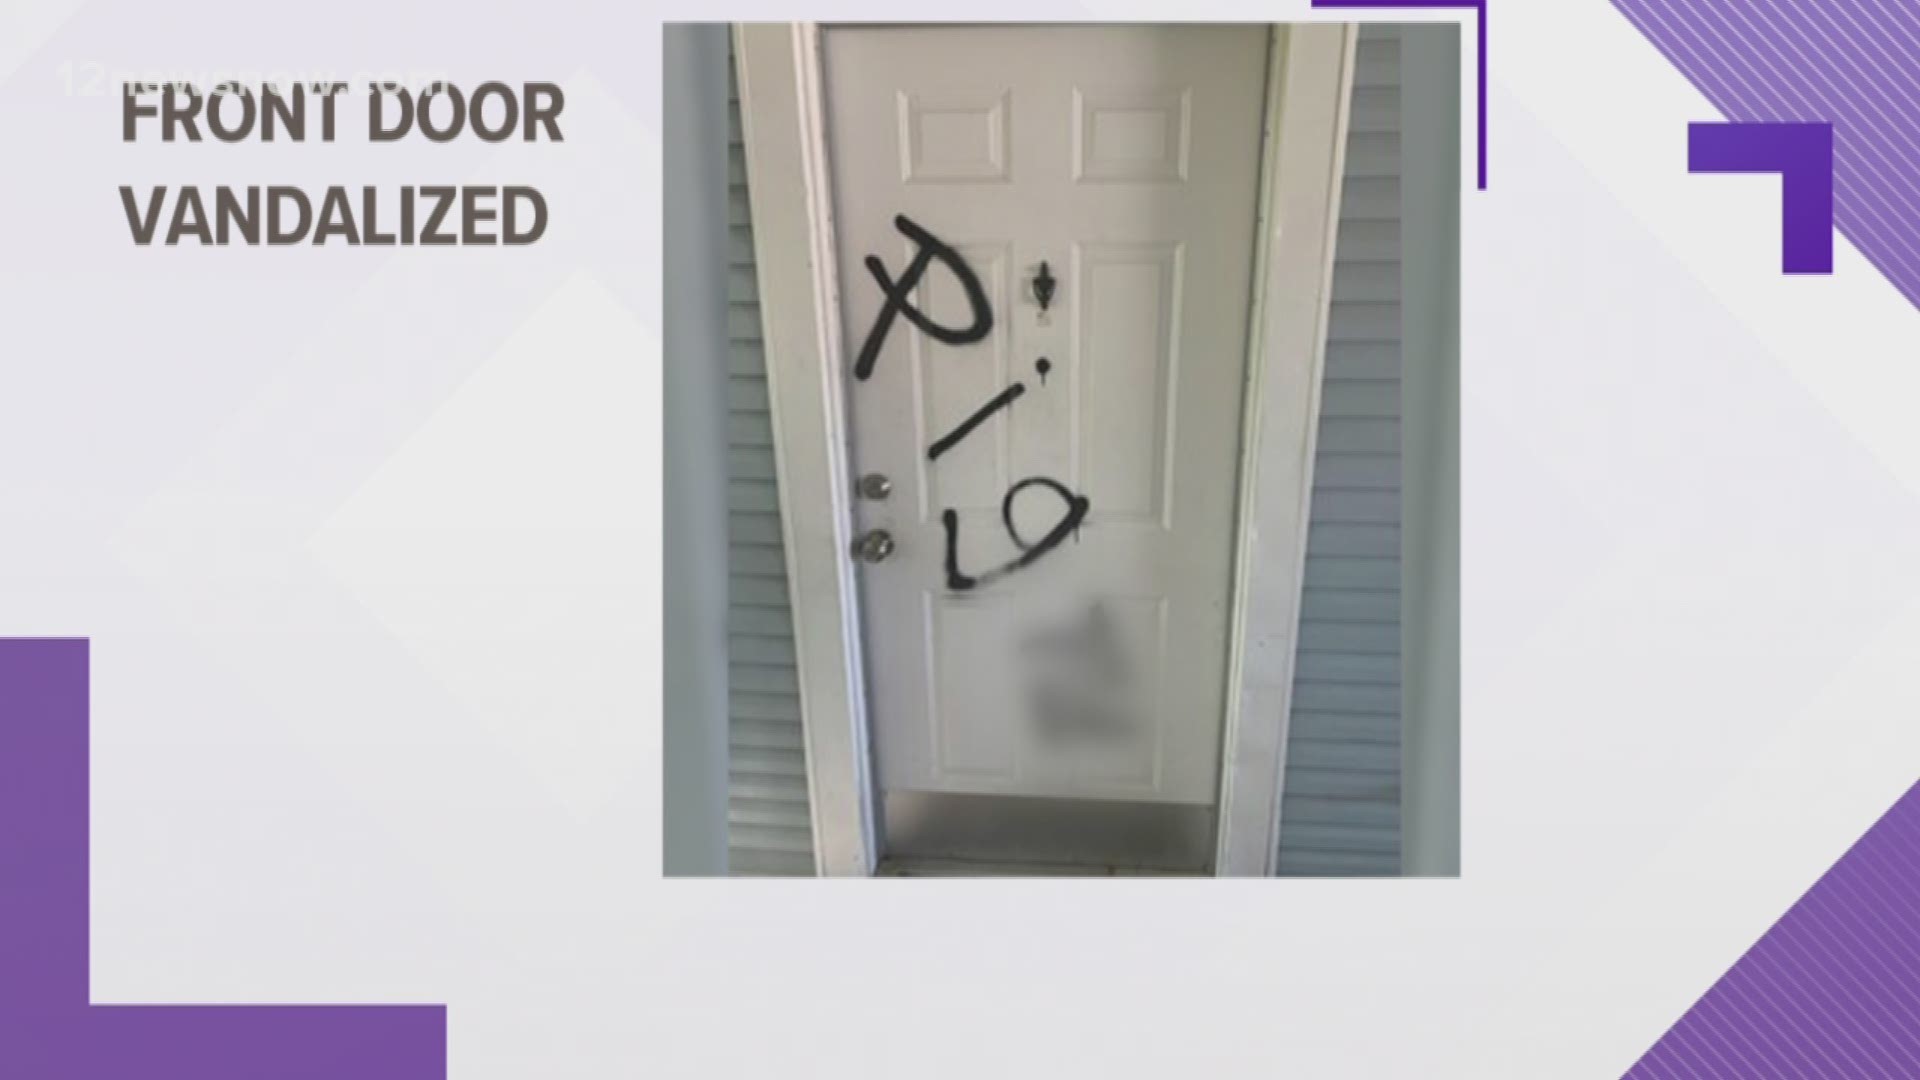 The officer's door was vandalized.